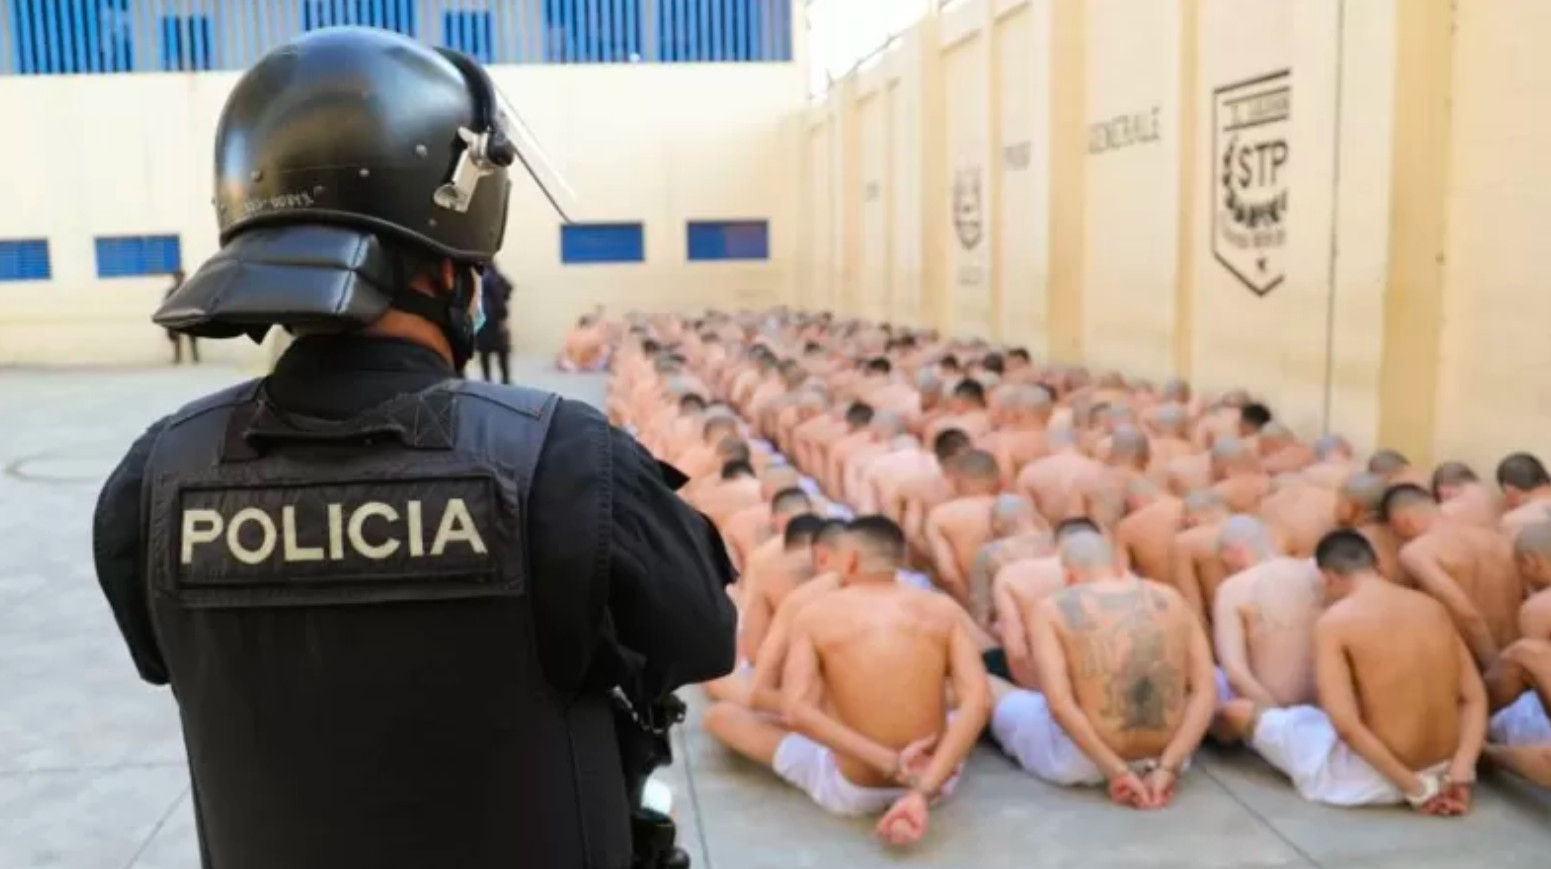 Εξονυχιστικός έλεγχος στο μεγαλύτερο σωφρονιστικό κατάστημα του Ελ Σαλβαδόρ – Στοιβαγμένοι και ημίγυμνοι οι κρατούμενοι